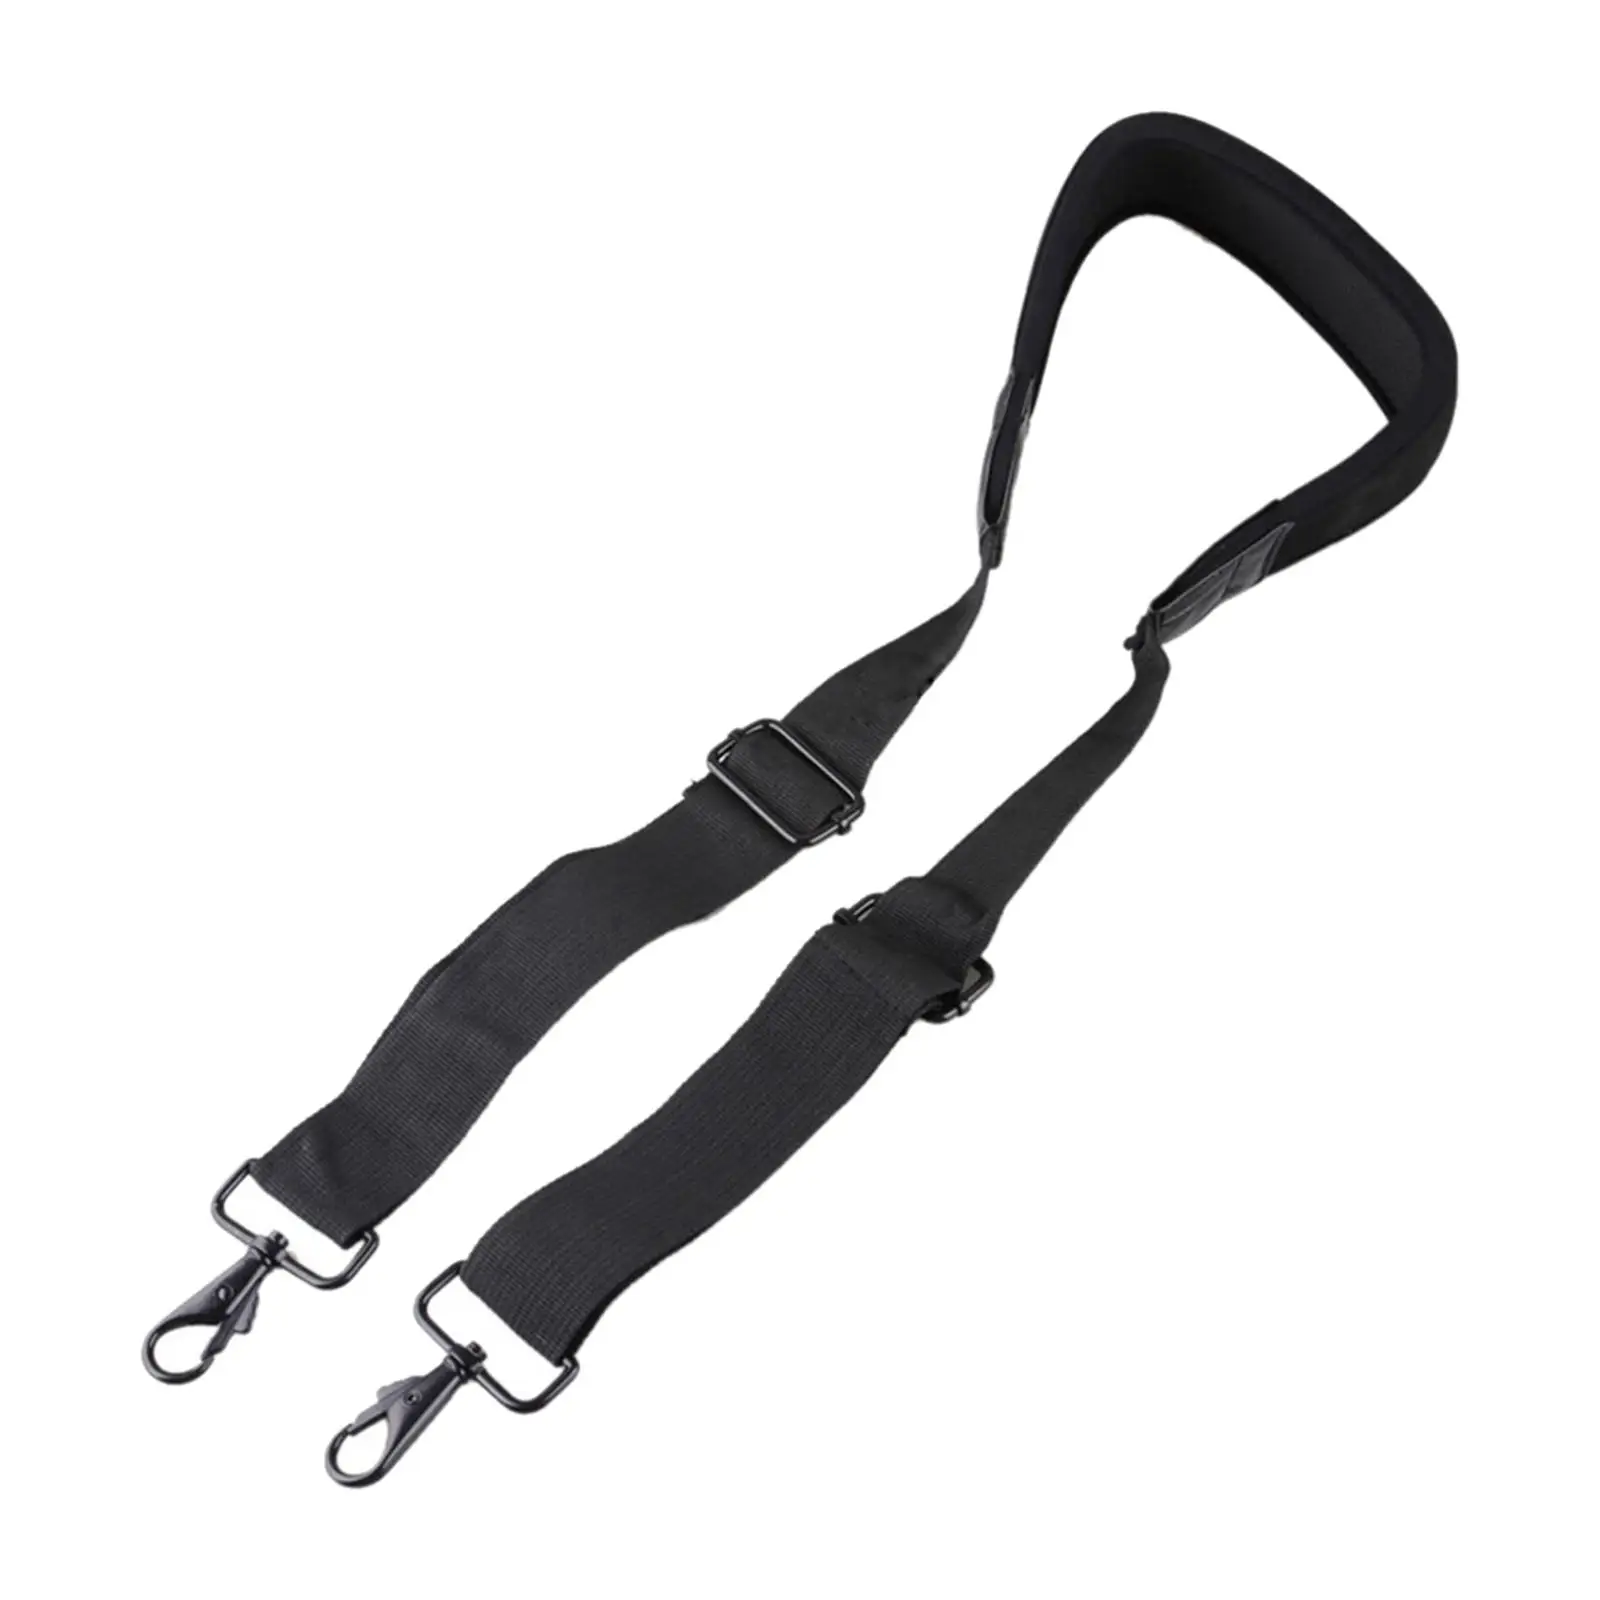 Shoulder Strap Belt Adjustable with Metal Hooks Soft Comfortable 52inch Black Thick Anti Slip for Camera Luggage Bag Laptop